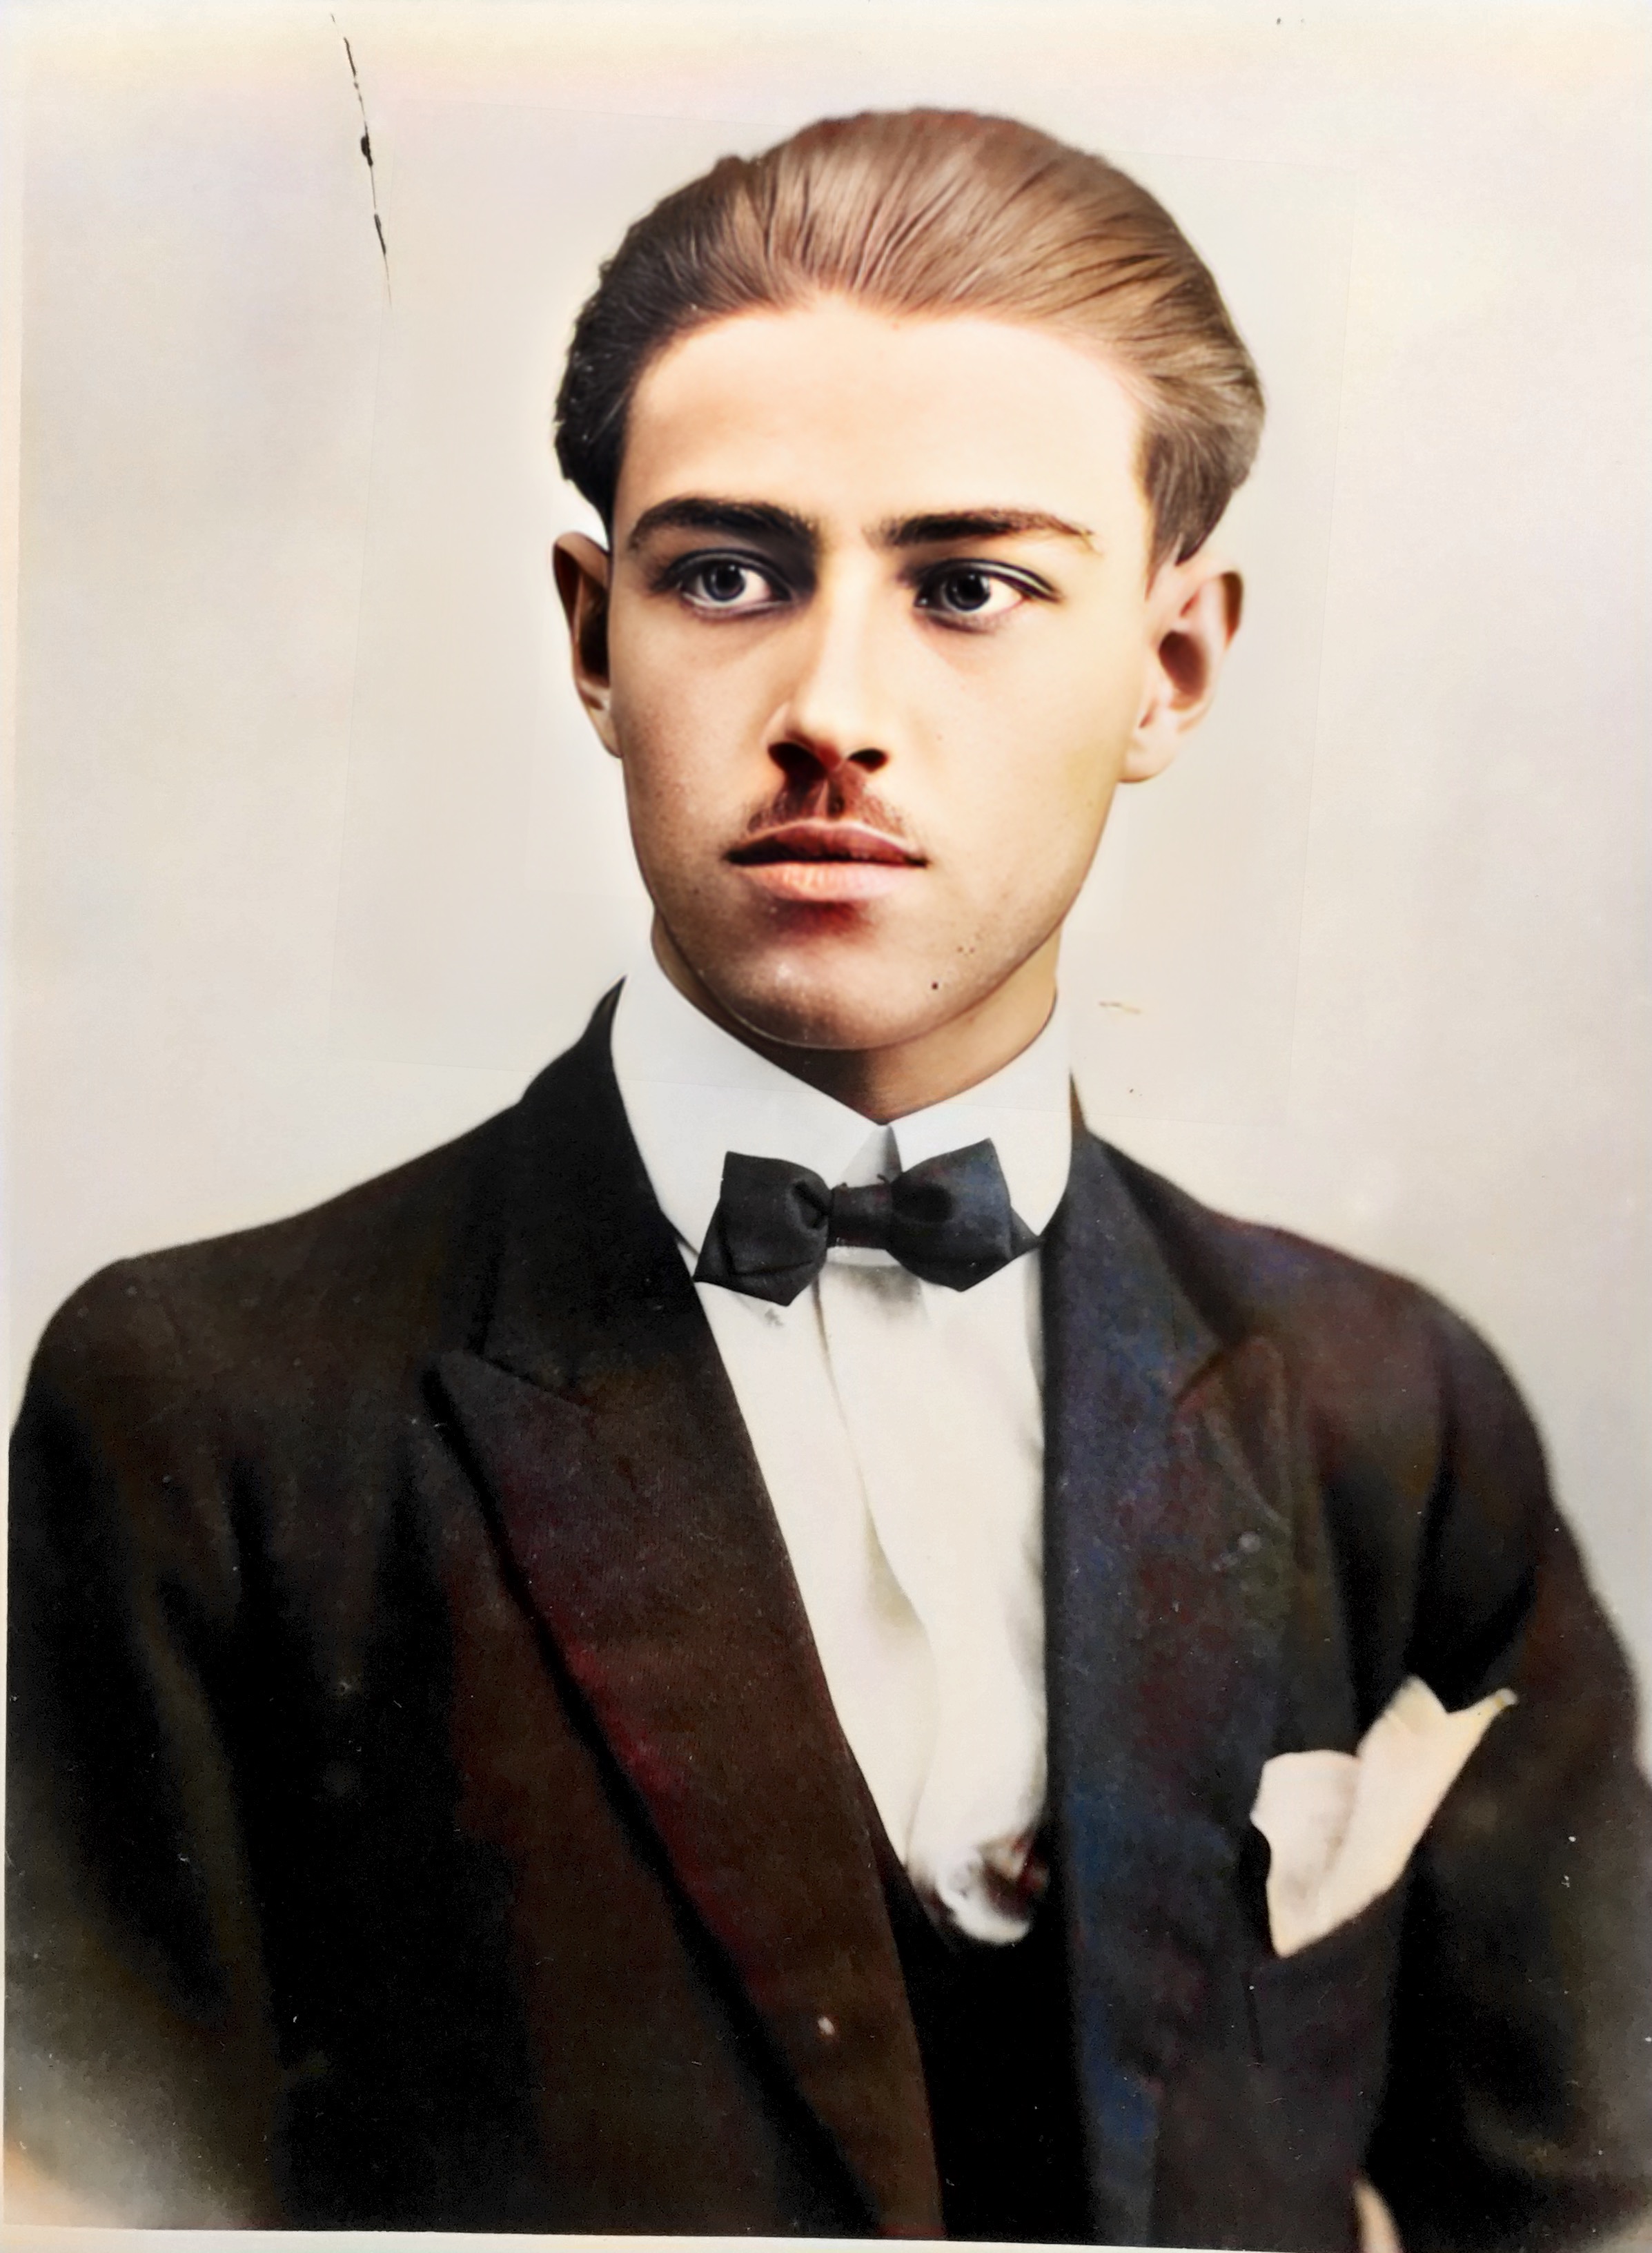 Mi abuelo a los 16 años en 1919